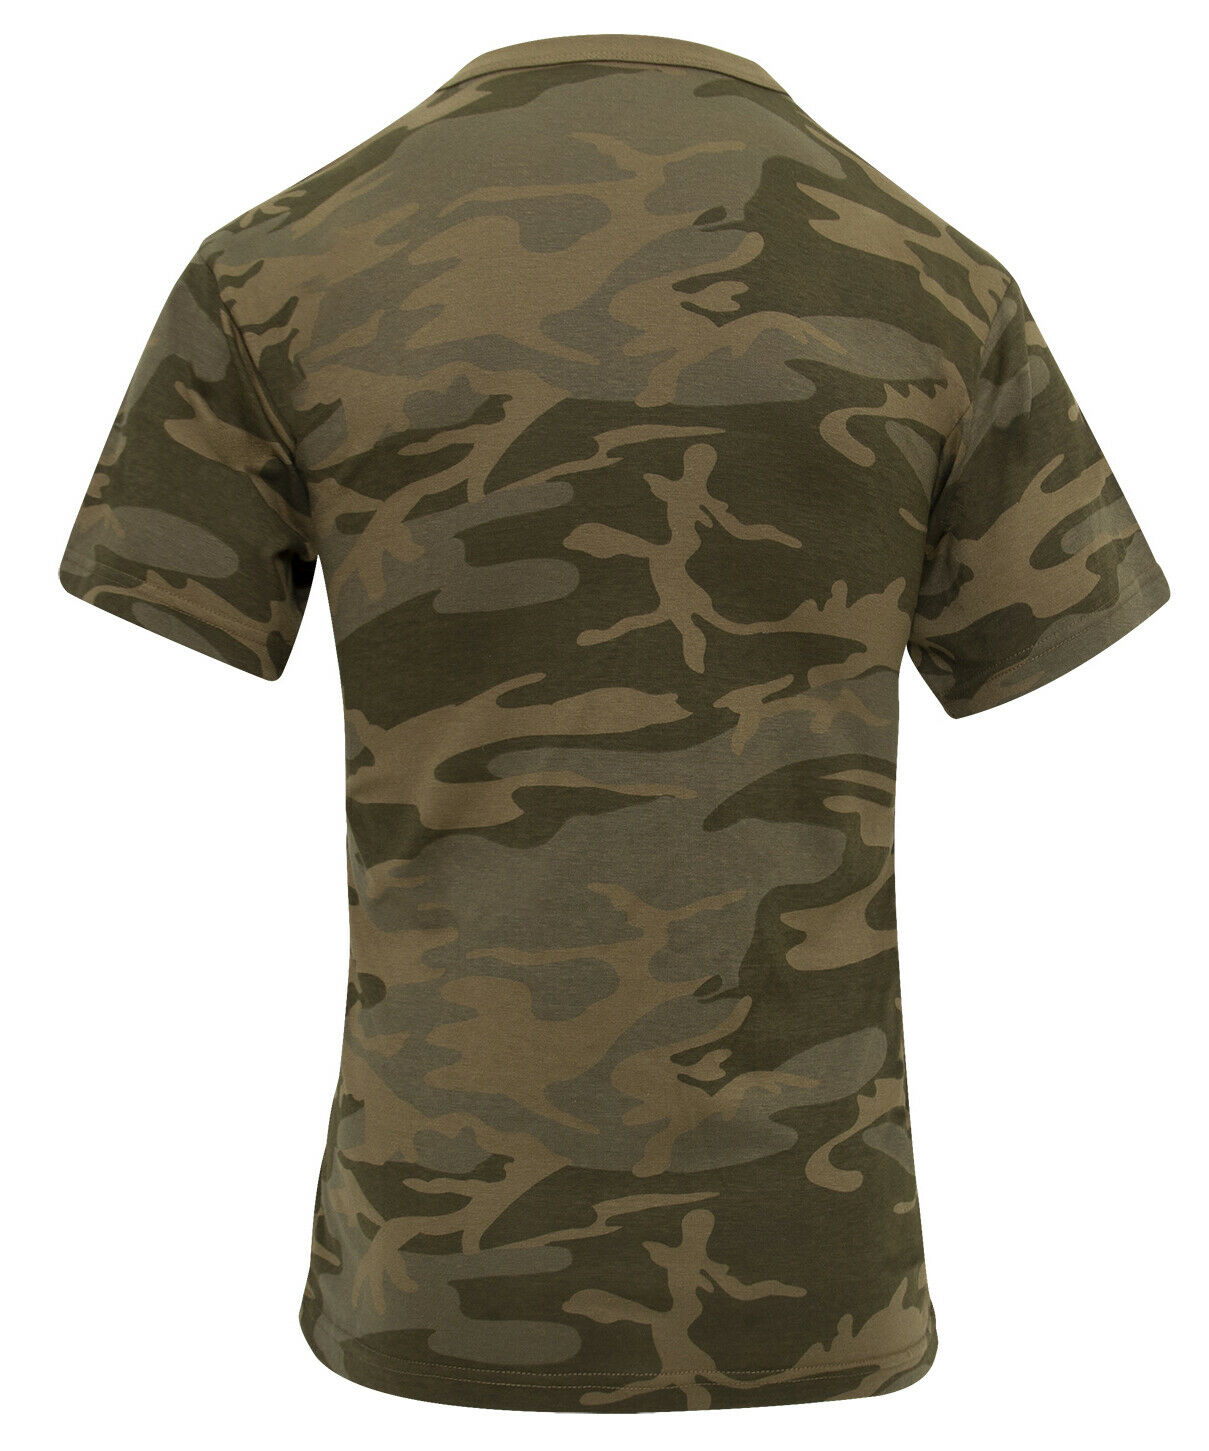 Rothco Color Camo T-Shirt - Coyote Brown Camo